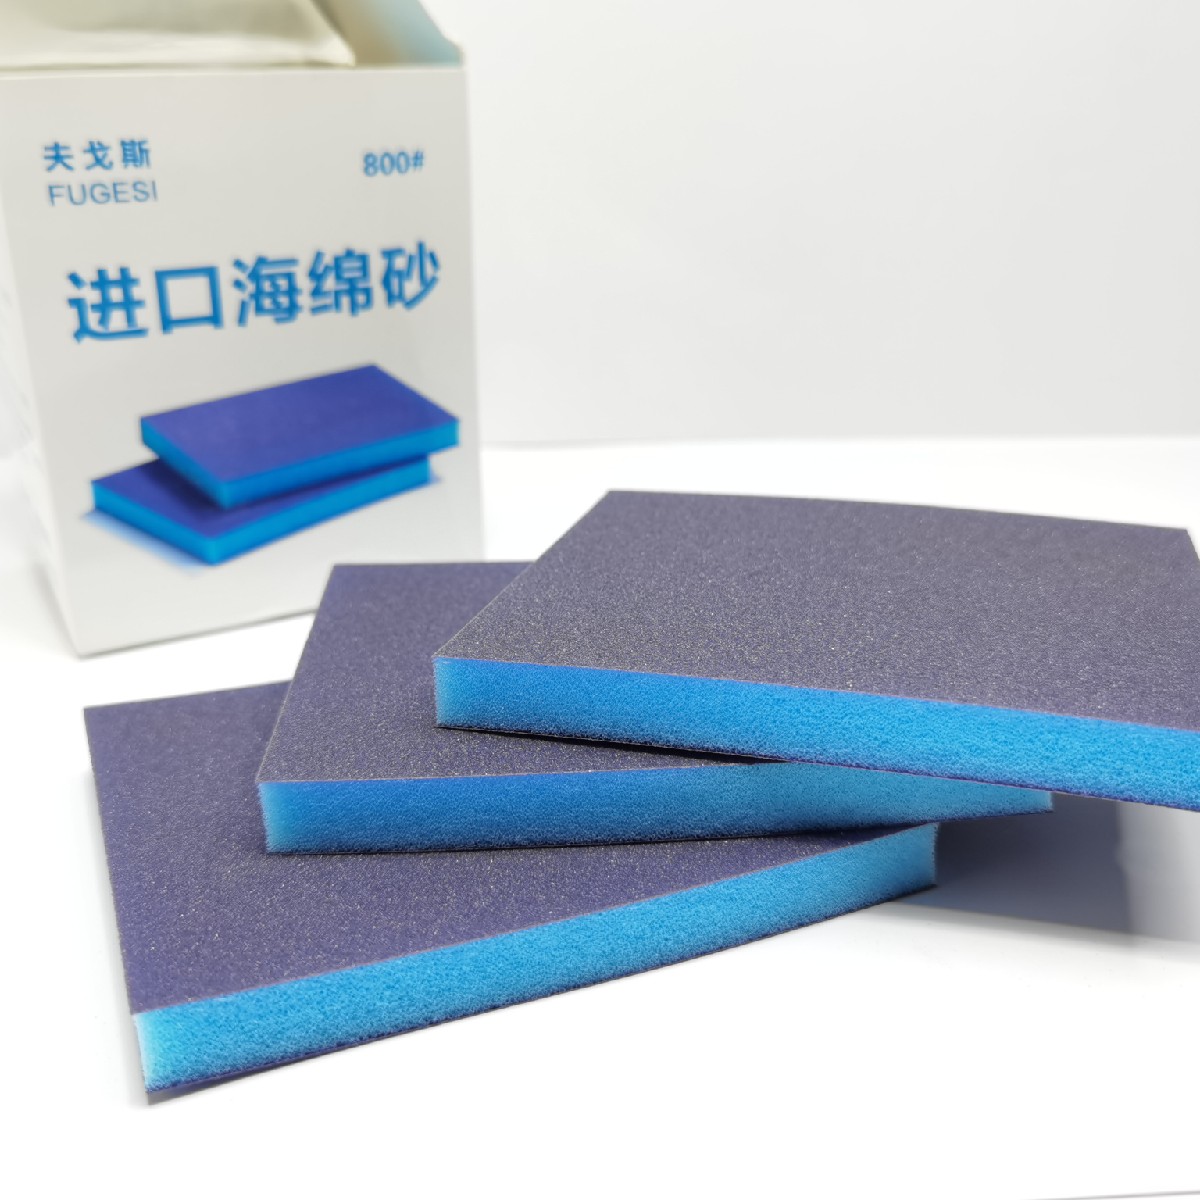 进口海绵砂纸双面海绵砂纸干磨砂纸 标准件/零部件/工业耗材 砂纸 原图主图